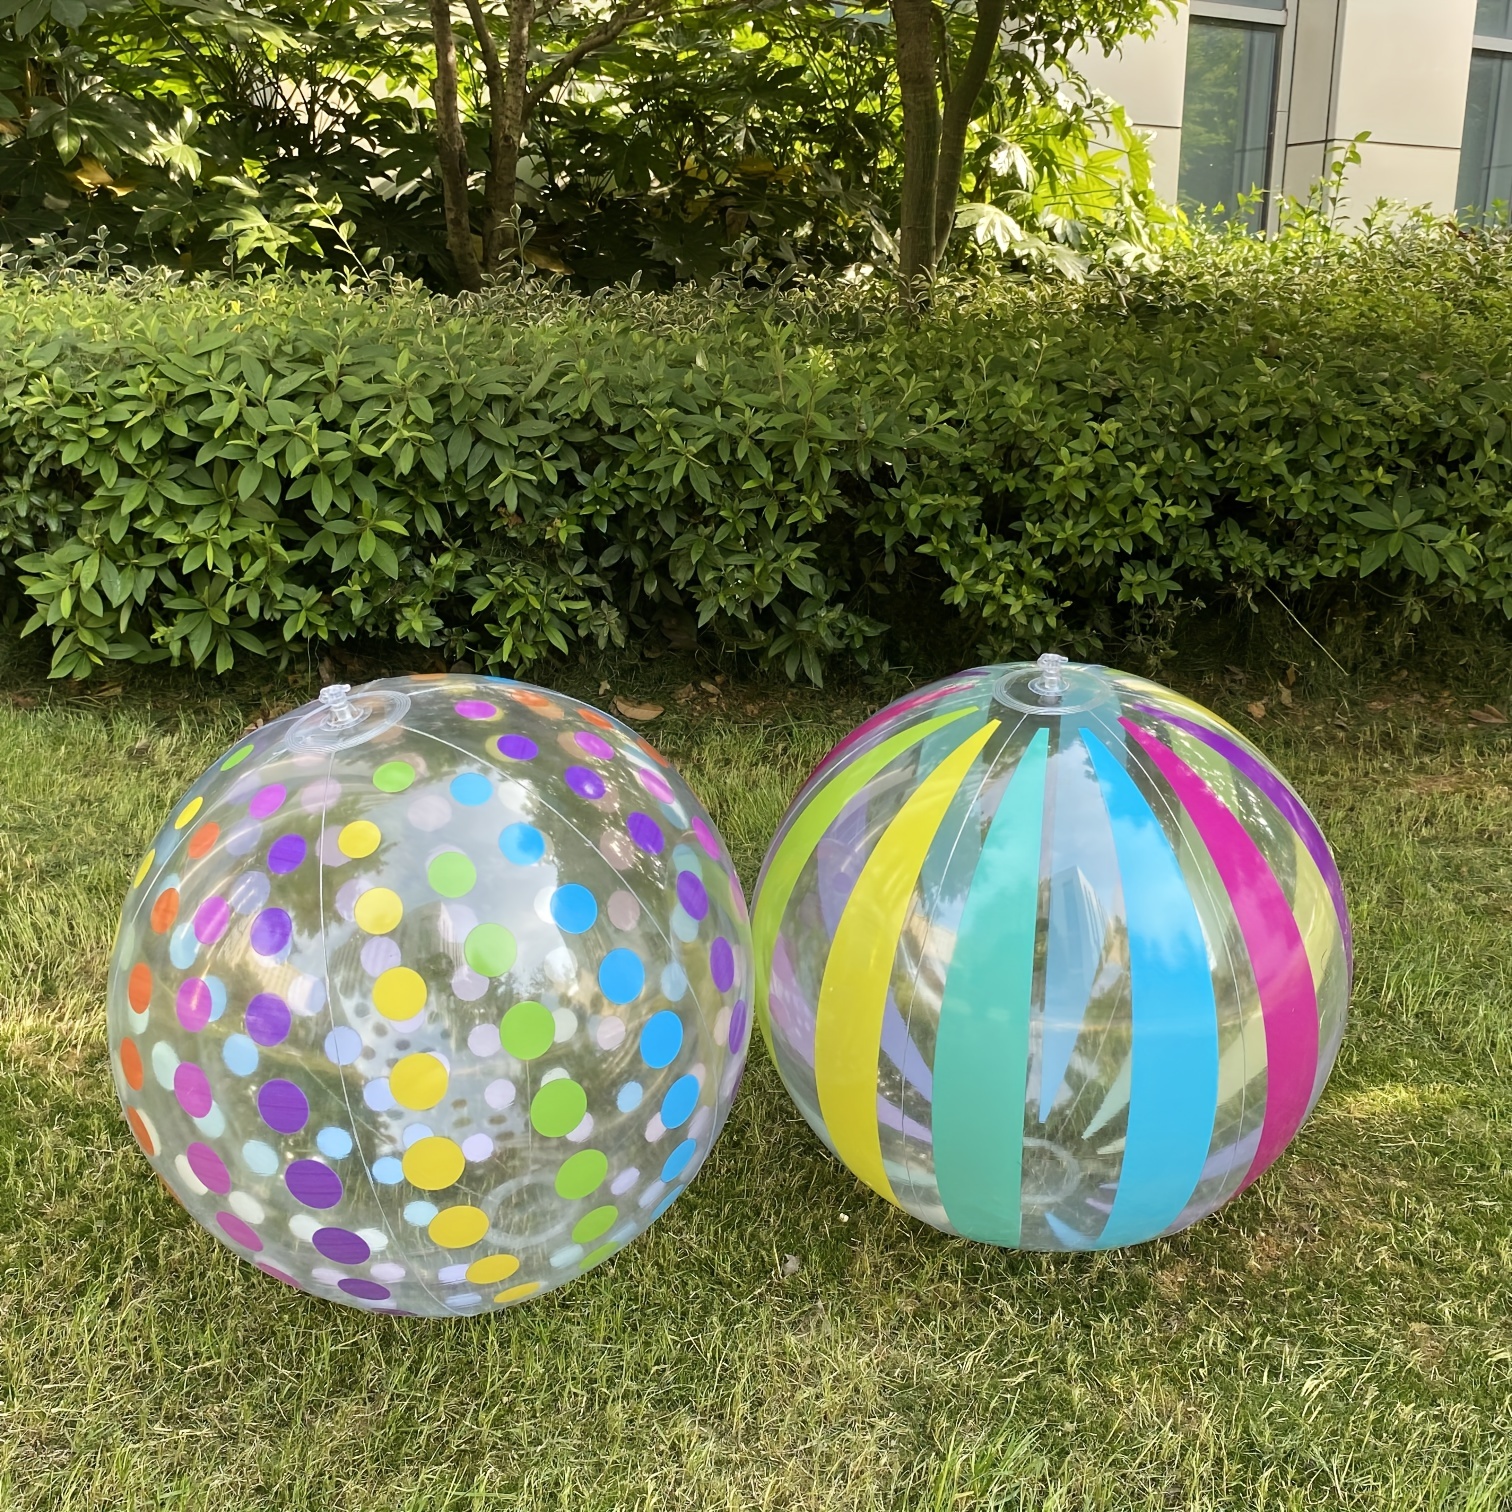 Ballon De Plage Gonflable Coloré